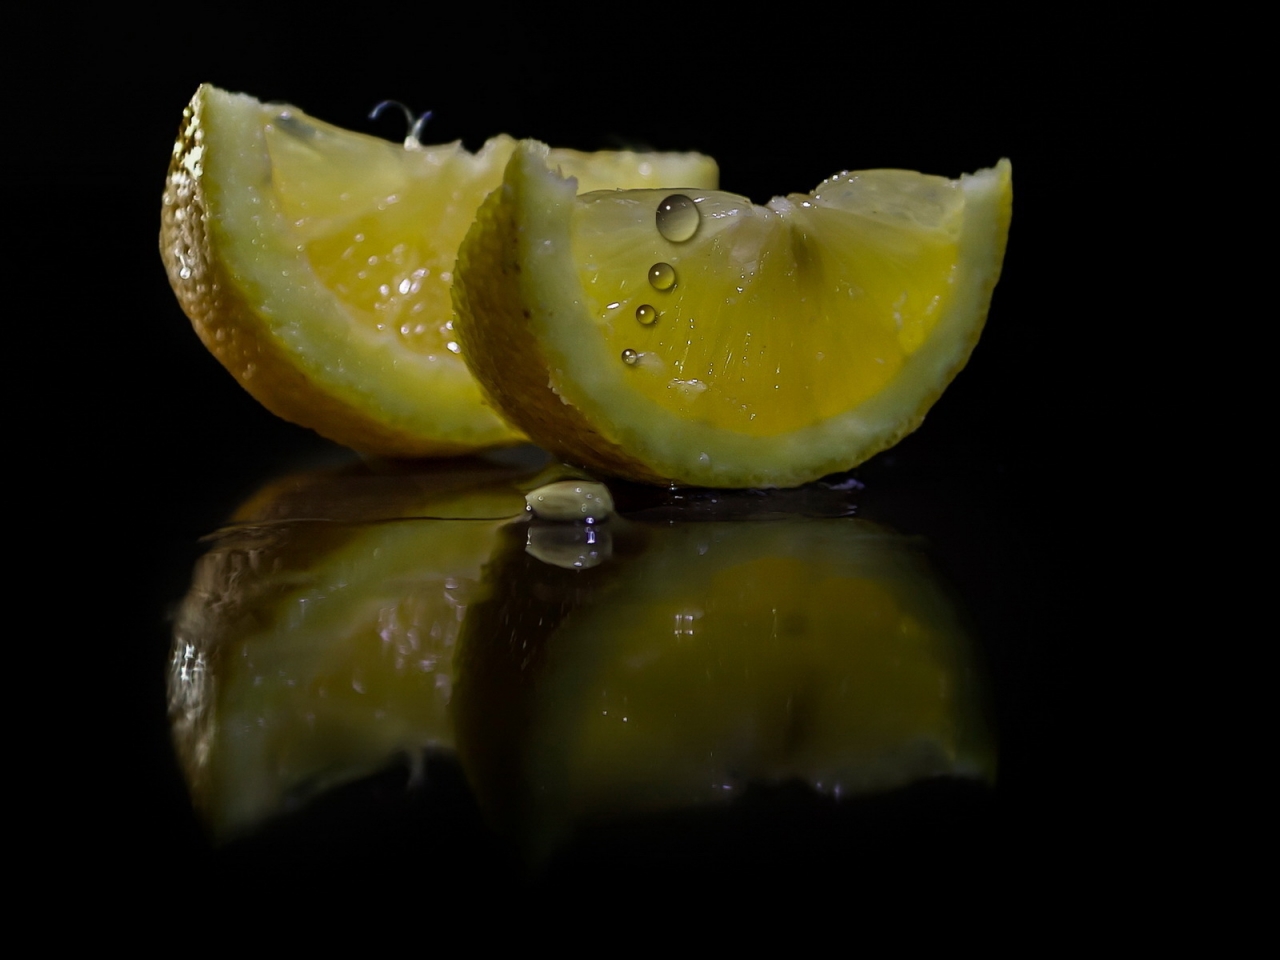 Lemon Slices for 1280 x 960 resolution